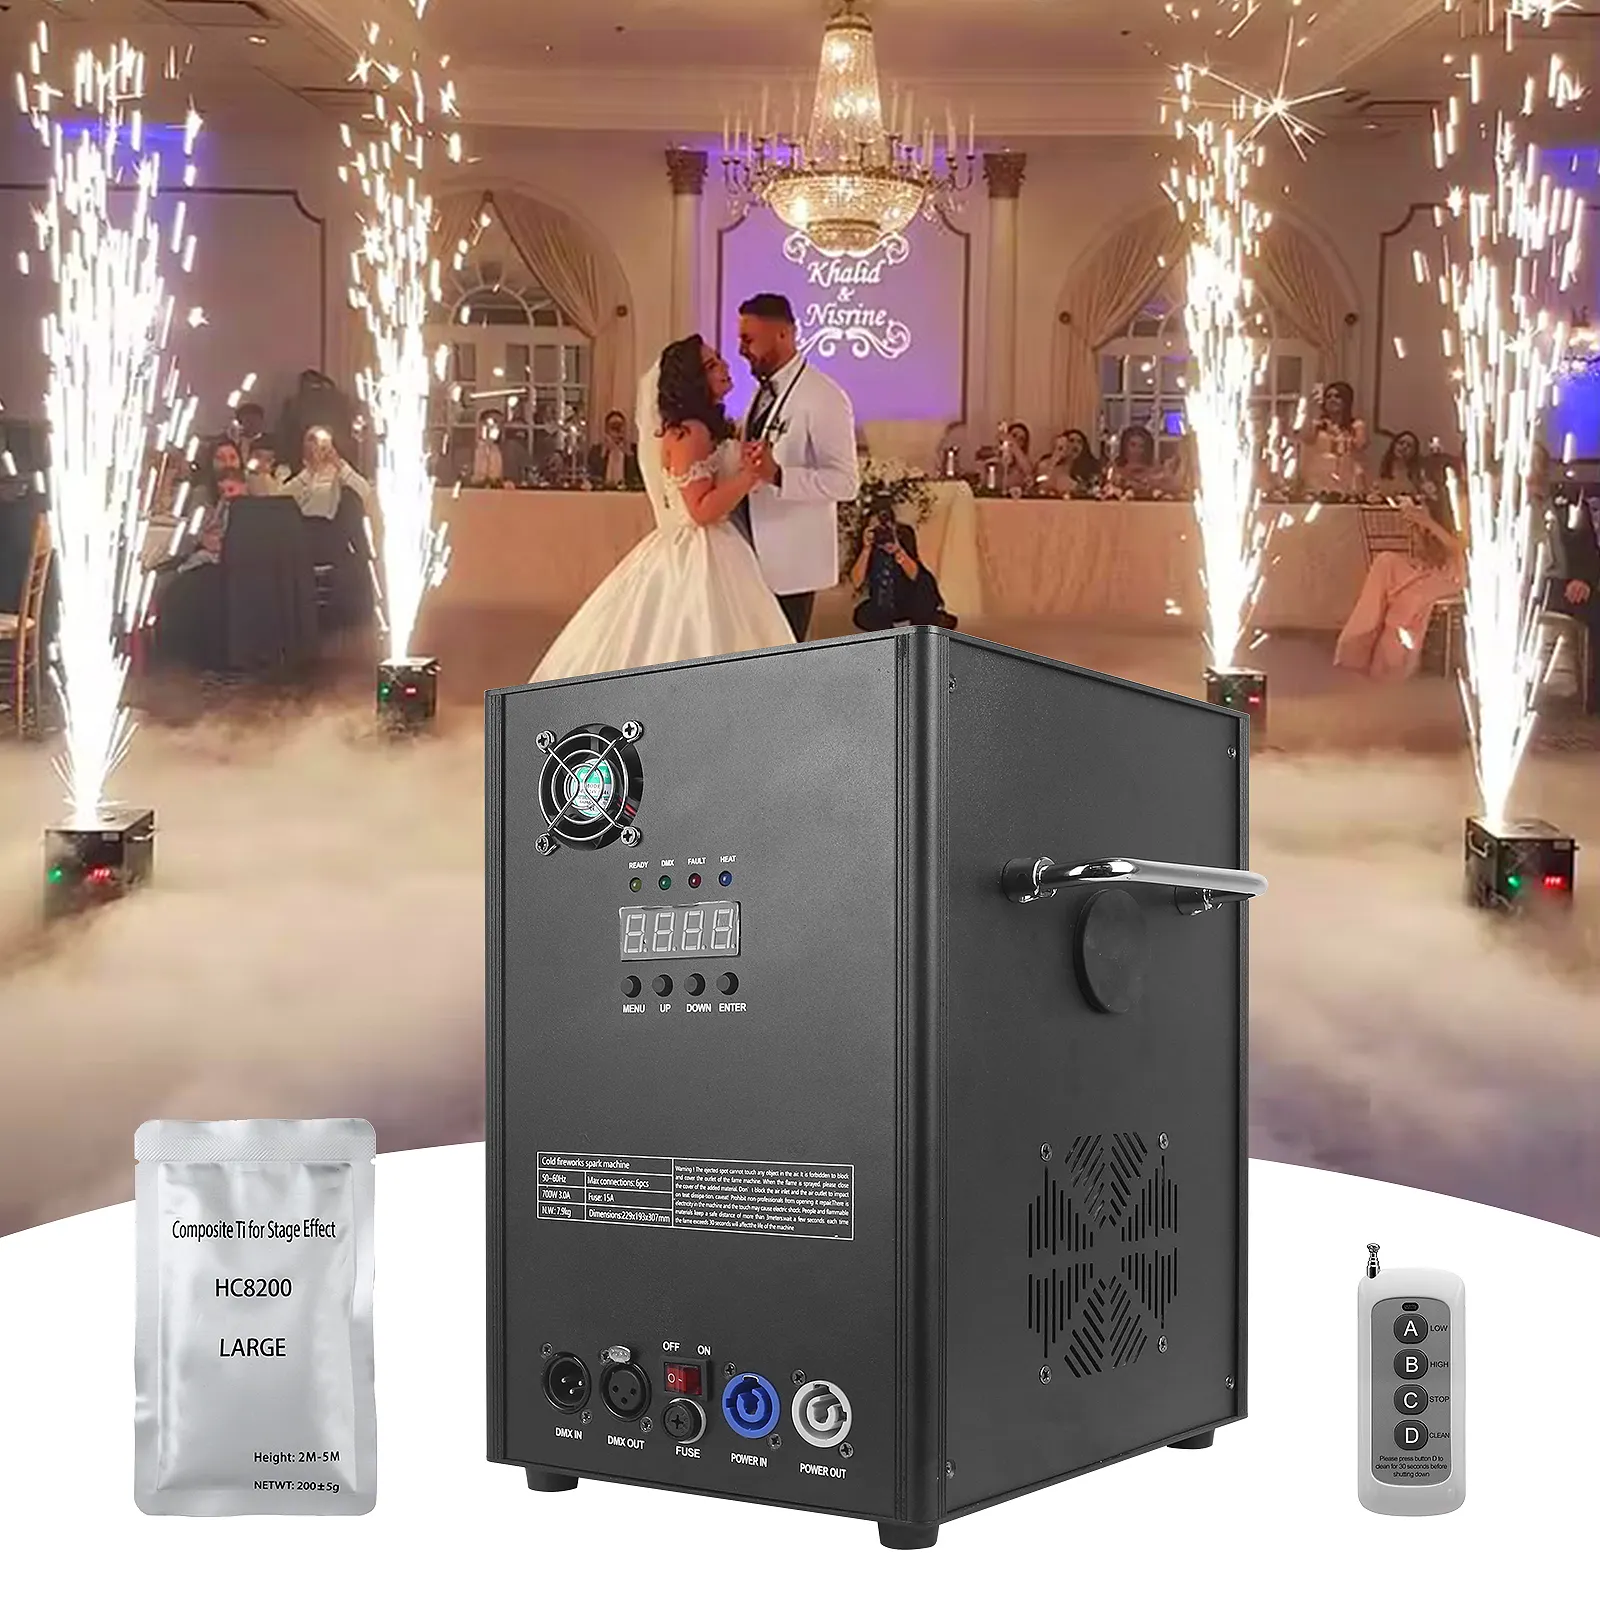 Schlussverkauf Kalt-Schargen-Maschine kundenspezifische Bühnenbeleuchtungsausstattung für DJ Party Disco Mini-Feuerwerksmaschine